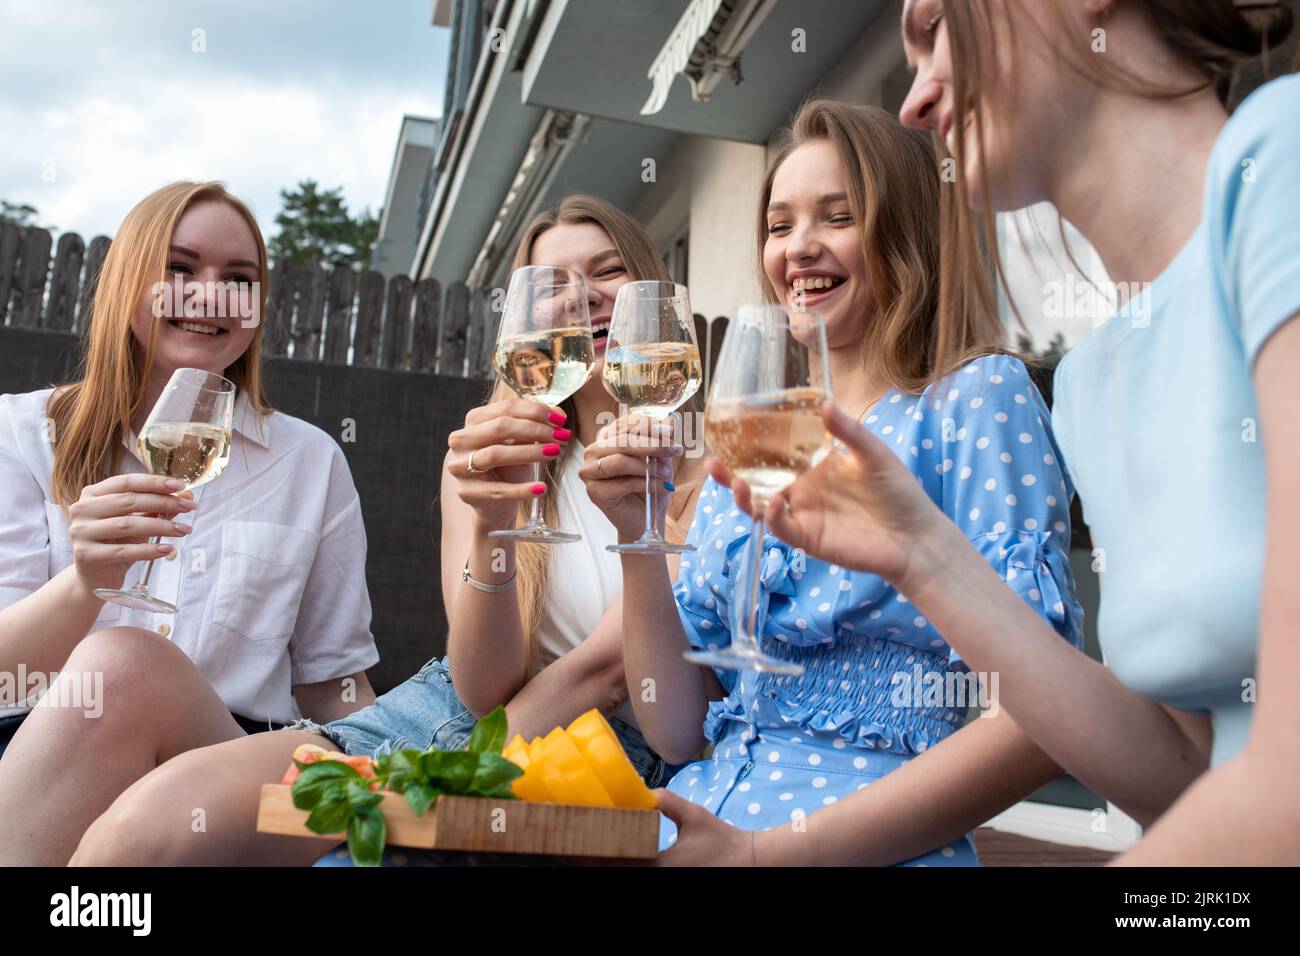 Portrait von jungen lustigen schönen Frauen, die geschnittenes Gemüse, klirrende Gläser Weißwein halten und in der Nähe des Hauses sitzen. Stockfoto